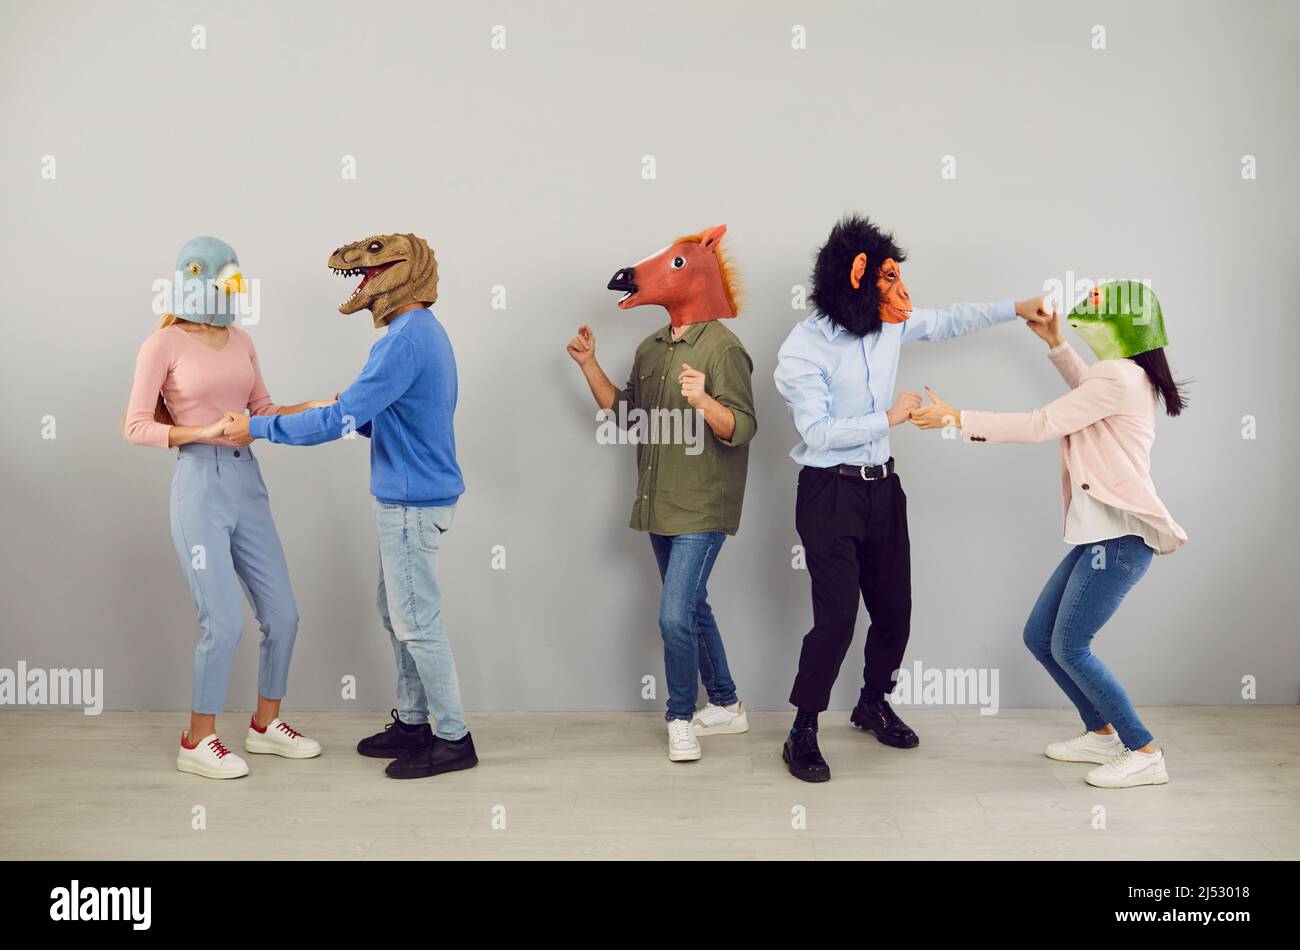 Fröhliche, exzentrische junge Menschen mit Köpfen verschiedener Tiere tanzen und haben gemeinsam Spaß. Stockfoto